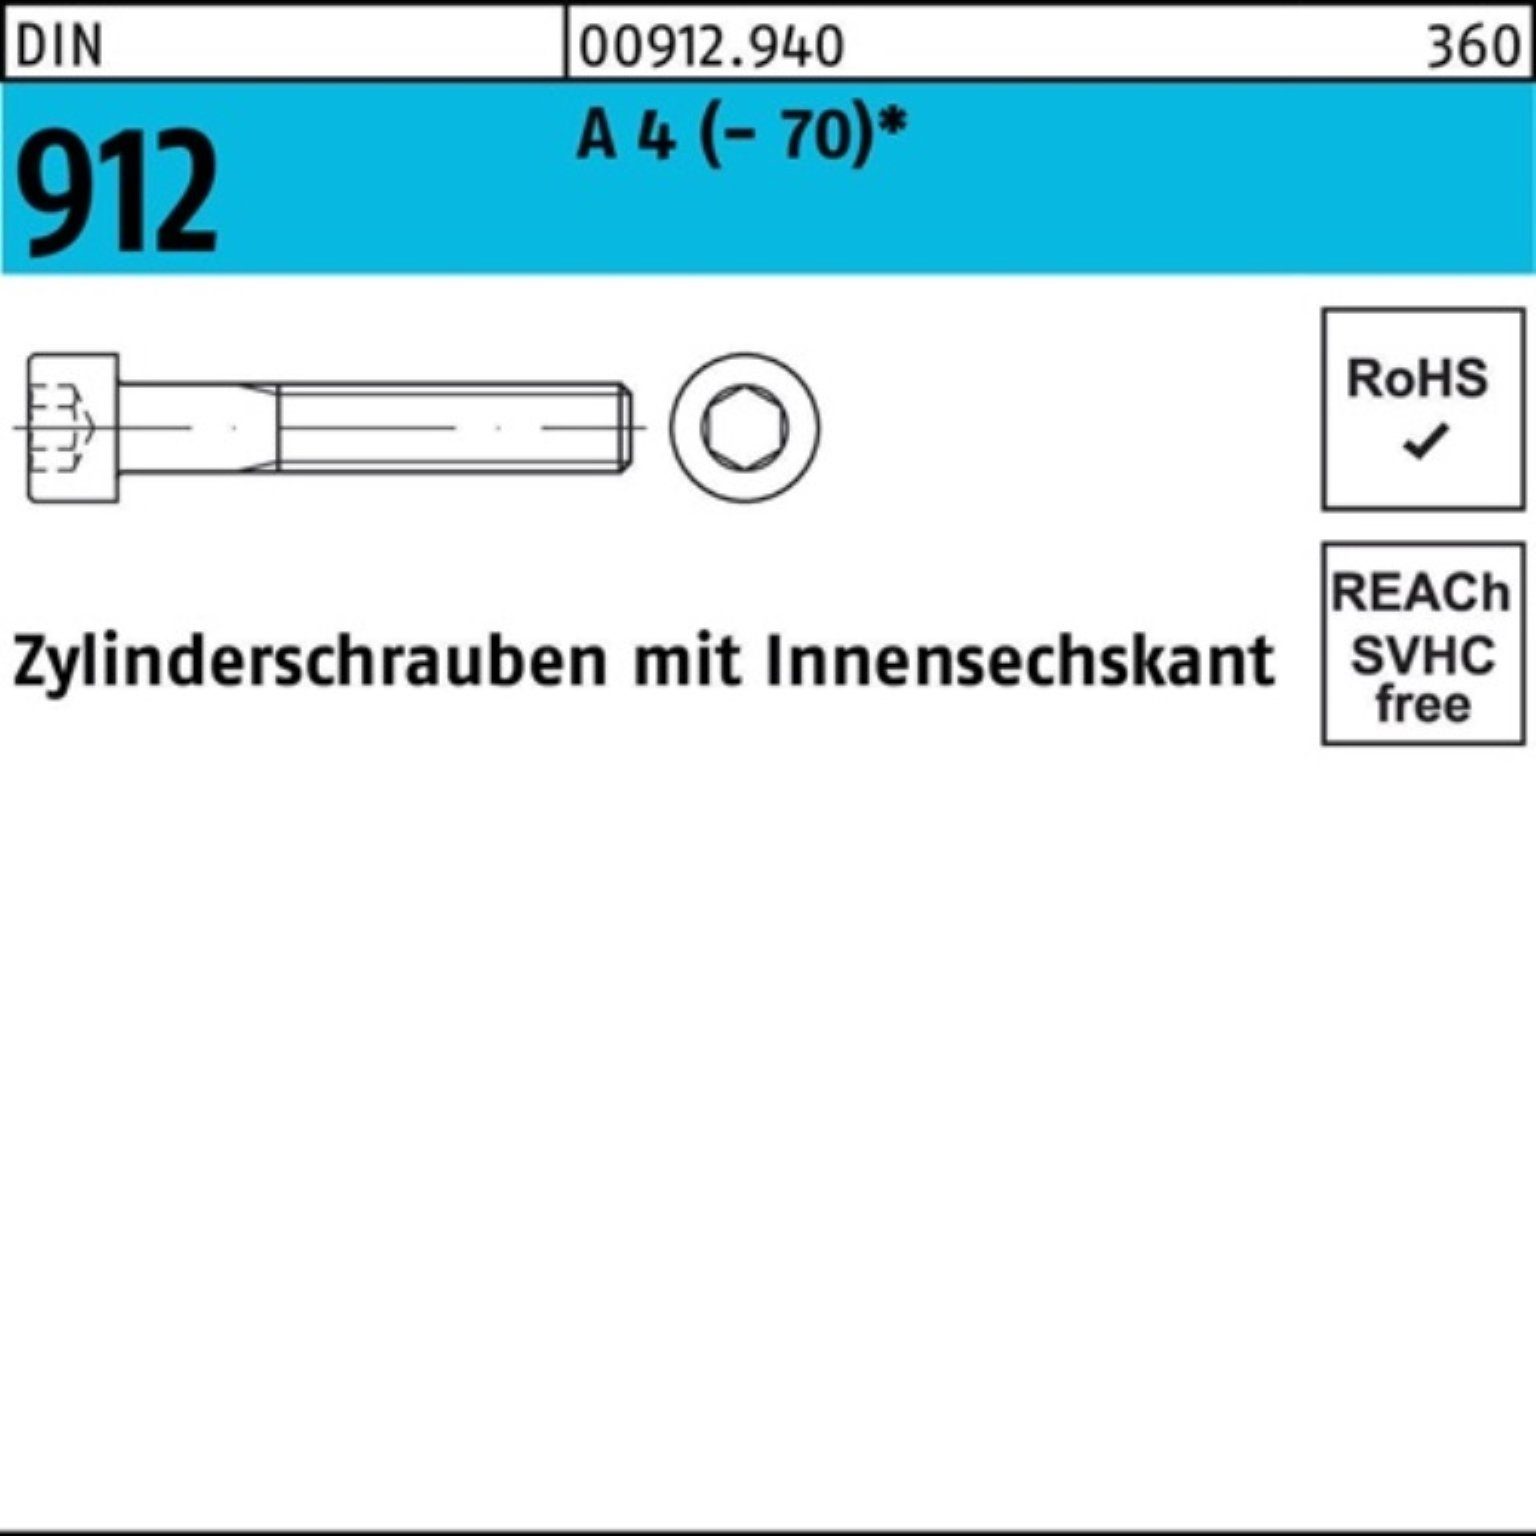 St Innen-6kt 912 (70) Zylinderschraube Reyher 200 Pack Zylinderschraube 200er 4 70 DIN A M8x